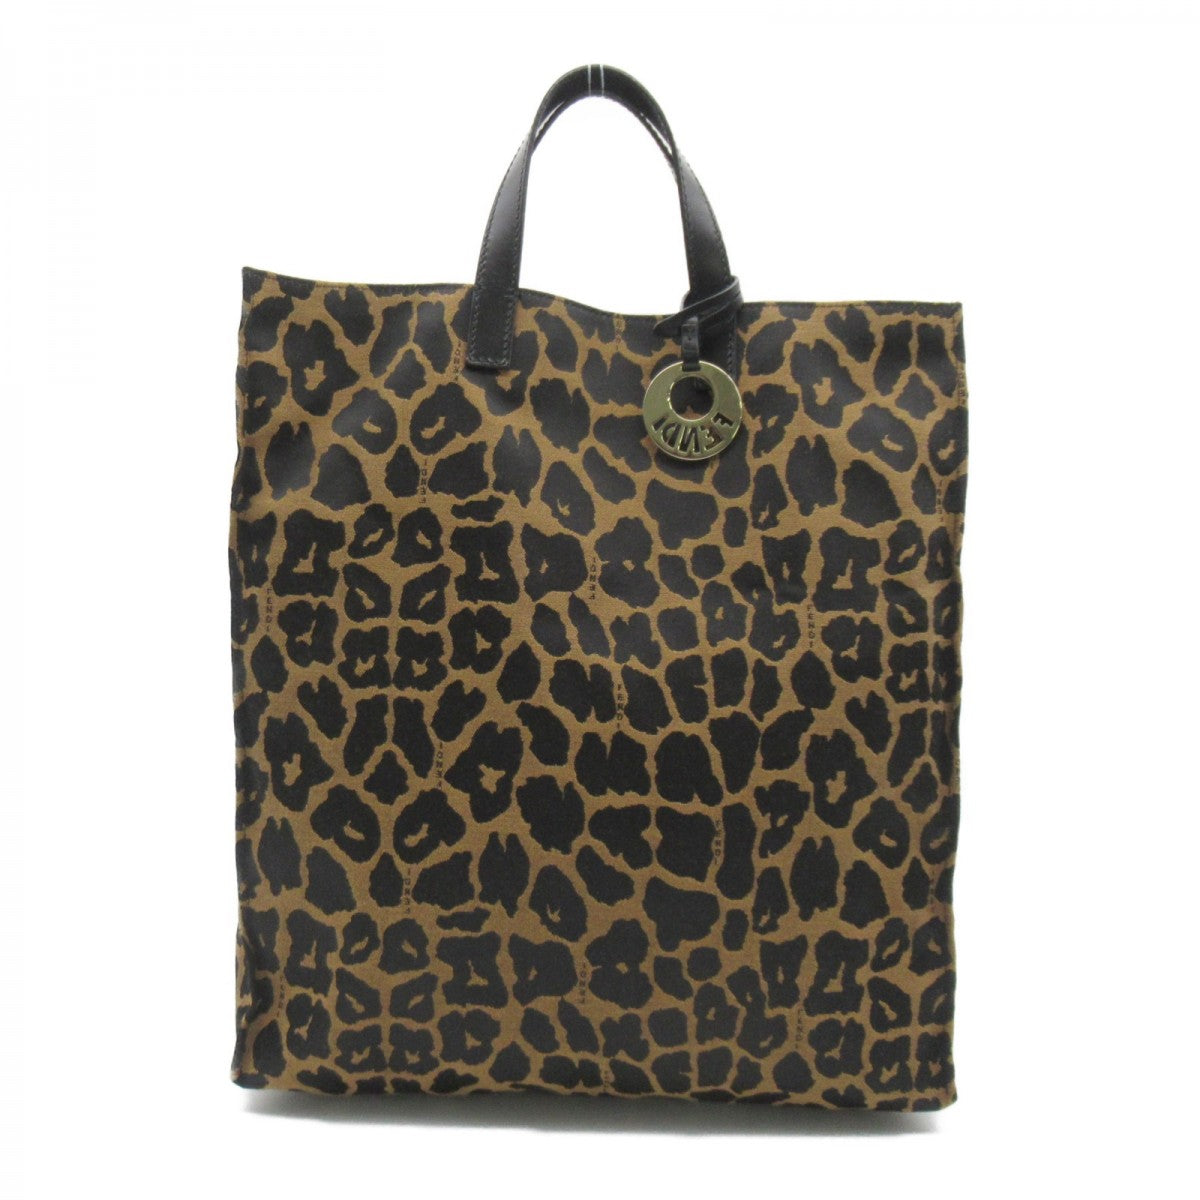 Leopard Print Canvas Tote Bag 8BH173